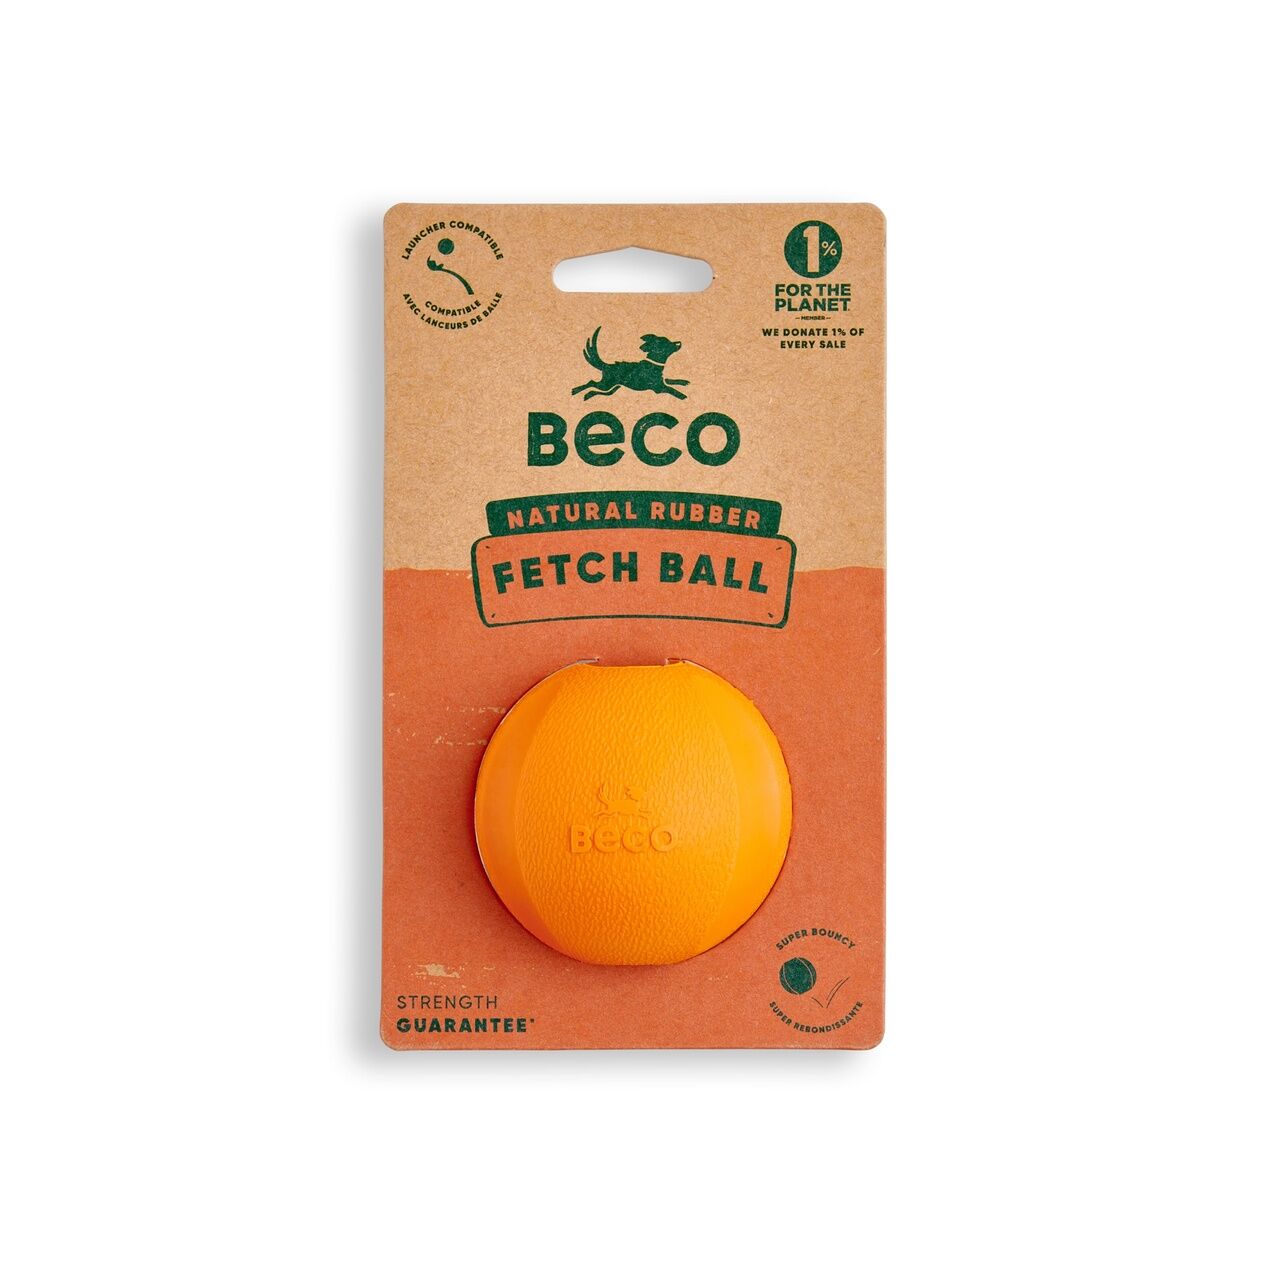 Beco-Fetch-Ball-Natur-Kautschuk-mit-Verpackung-Hundespielzeug-orange-BT-75628